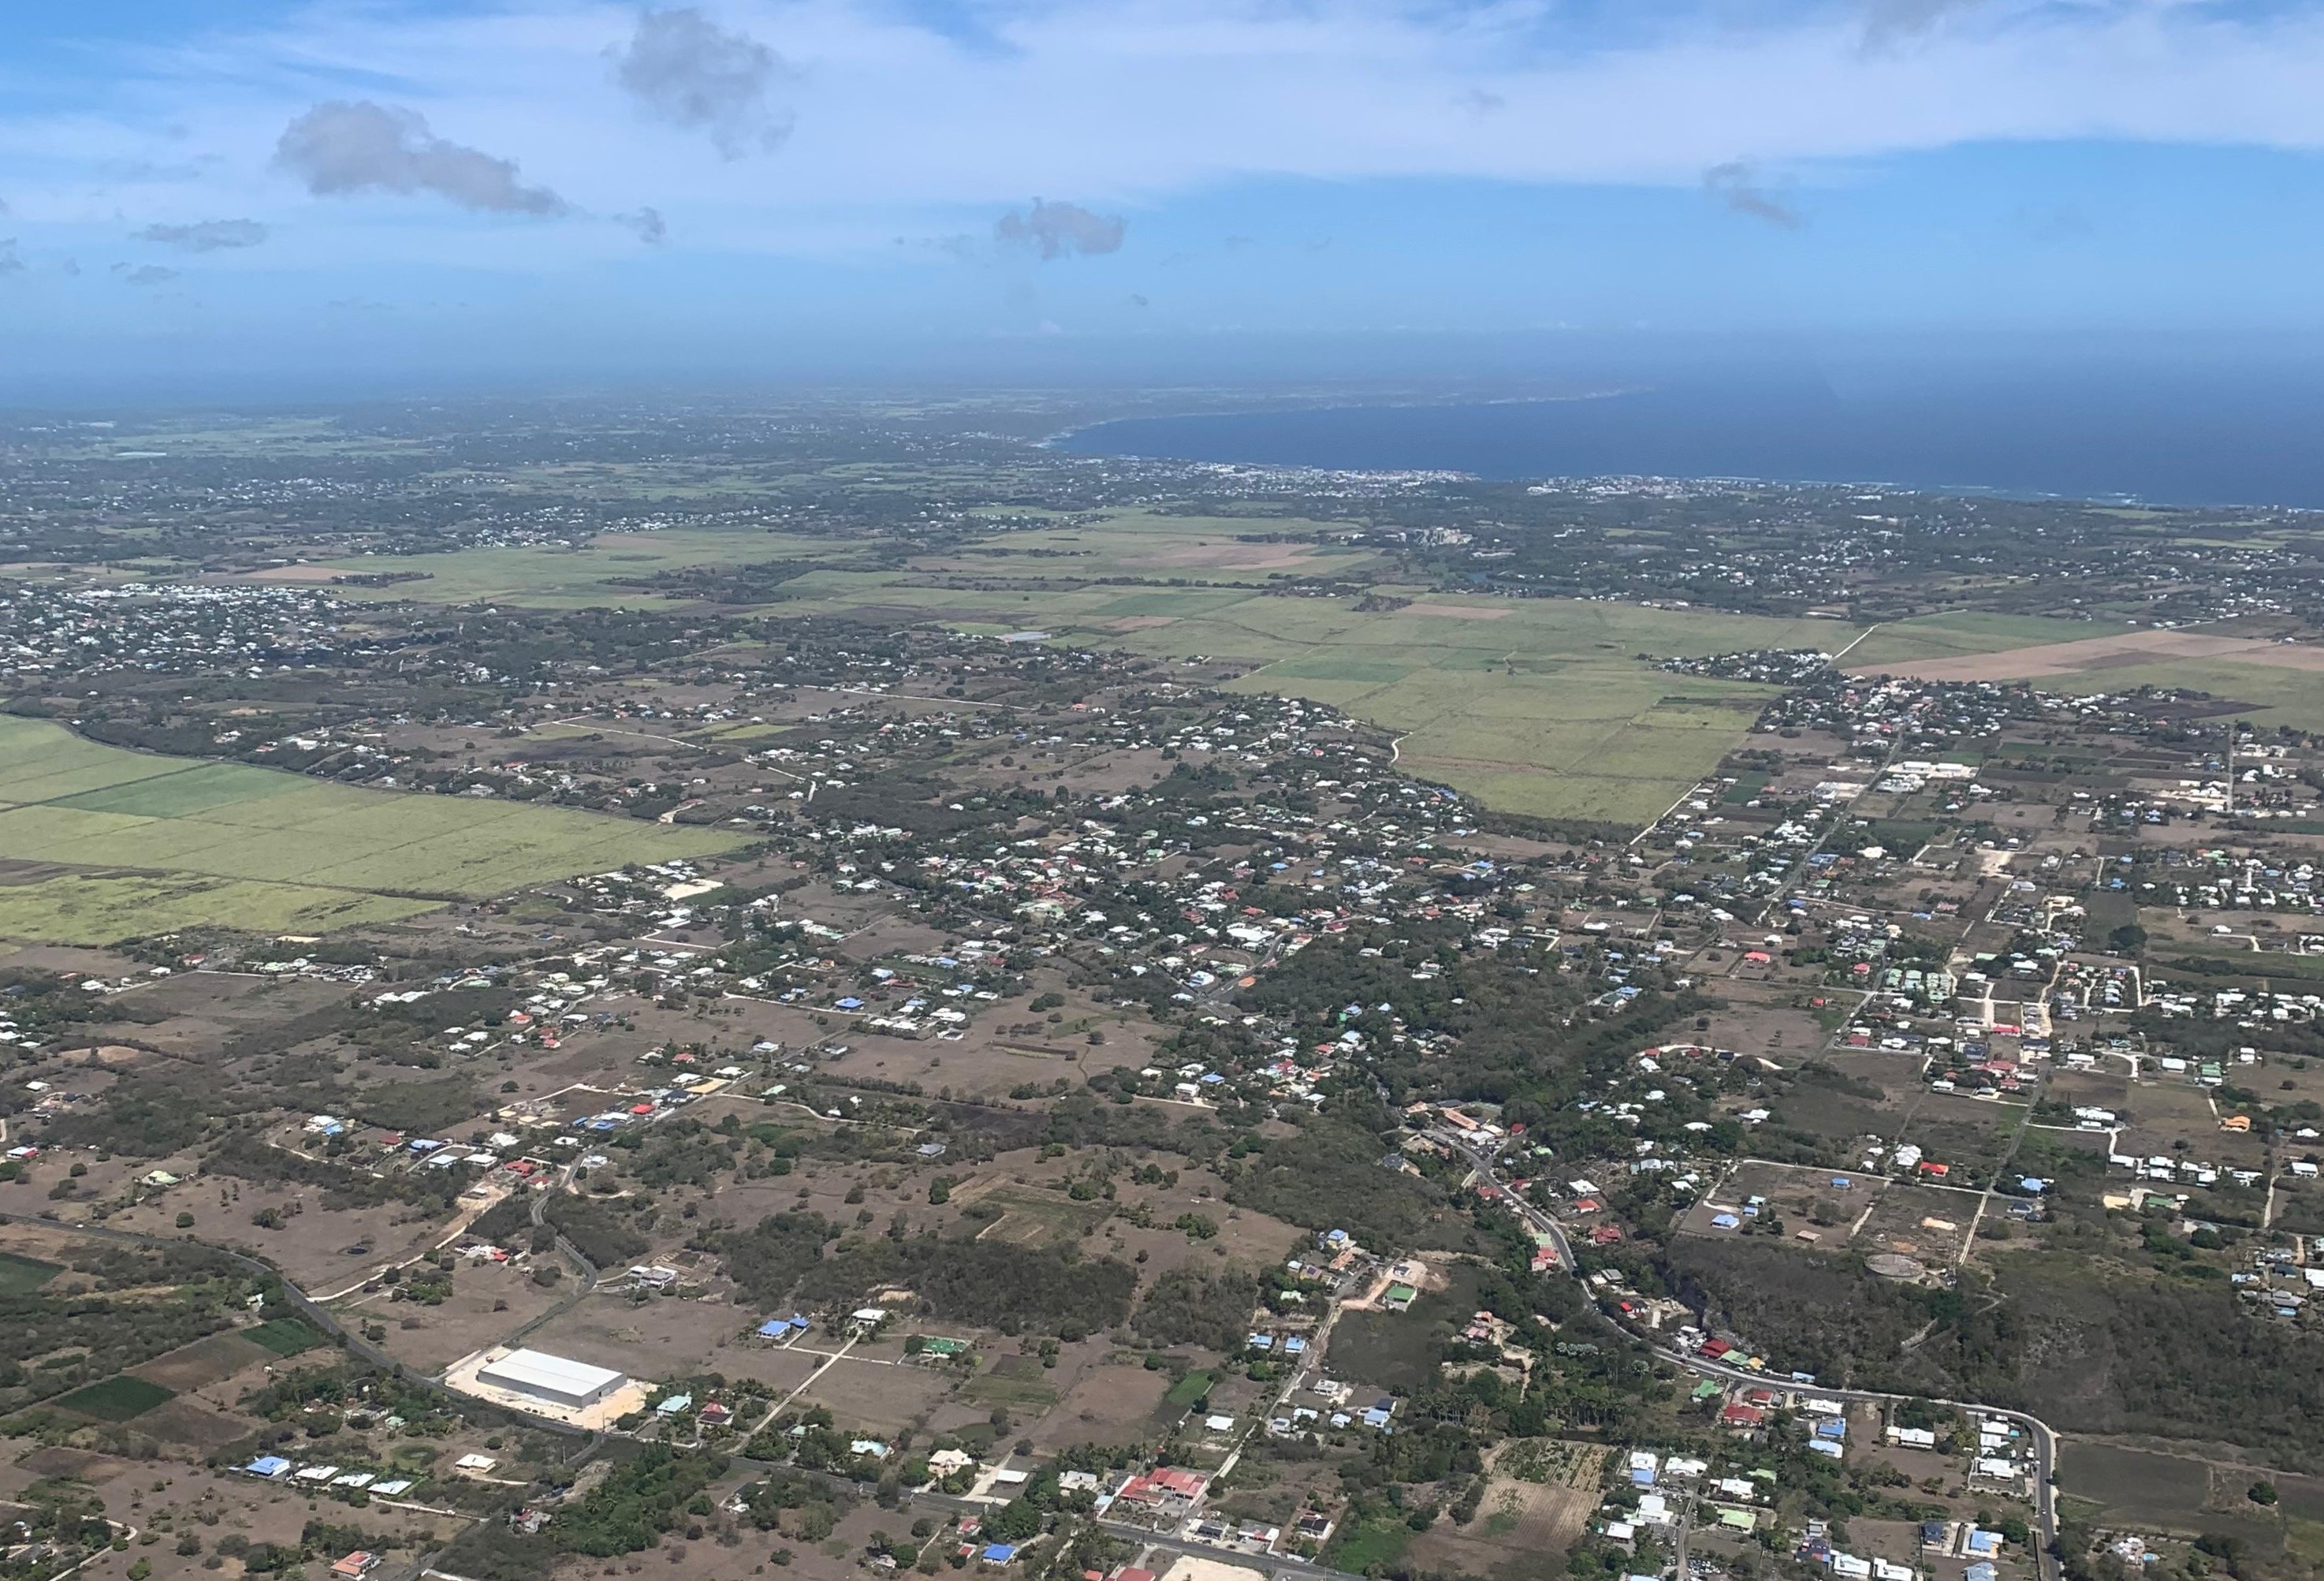     La consommation d’espace dédié à l’habitat progresse de 16% en Guadeloupe

